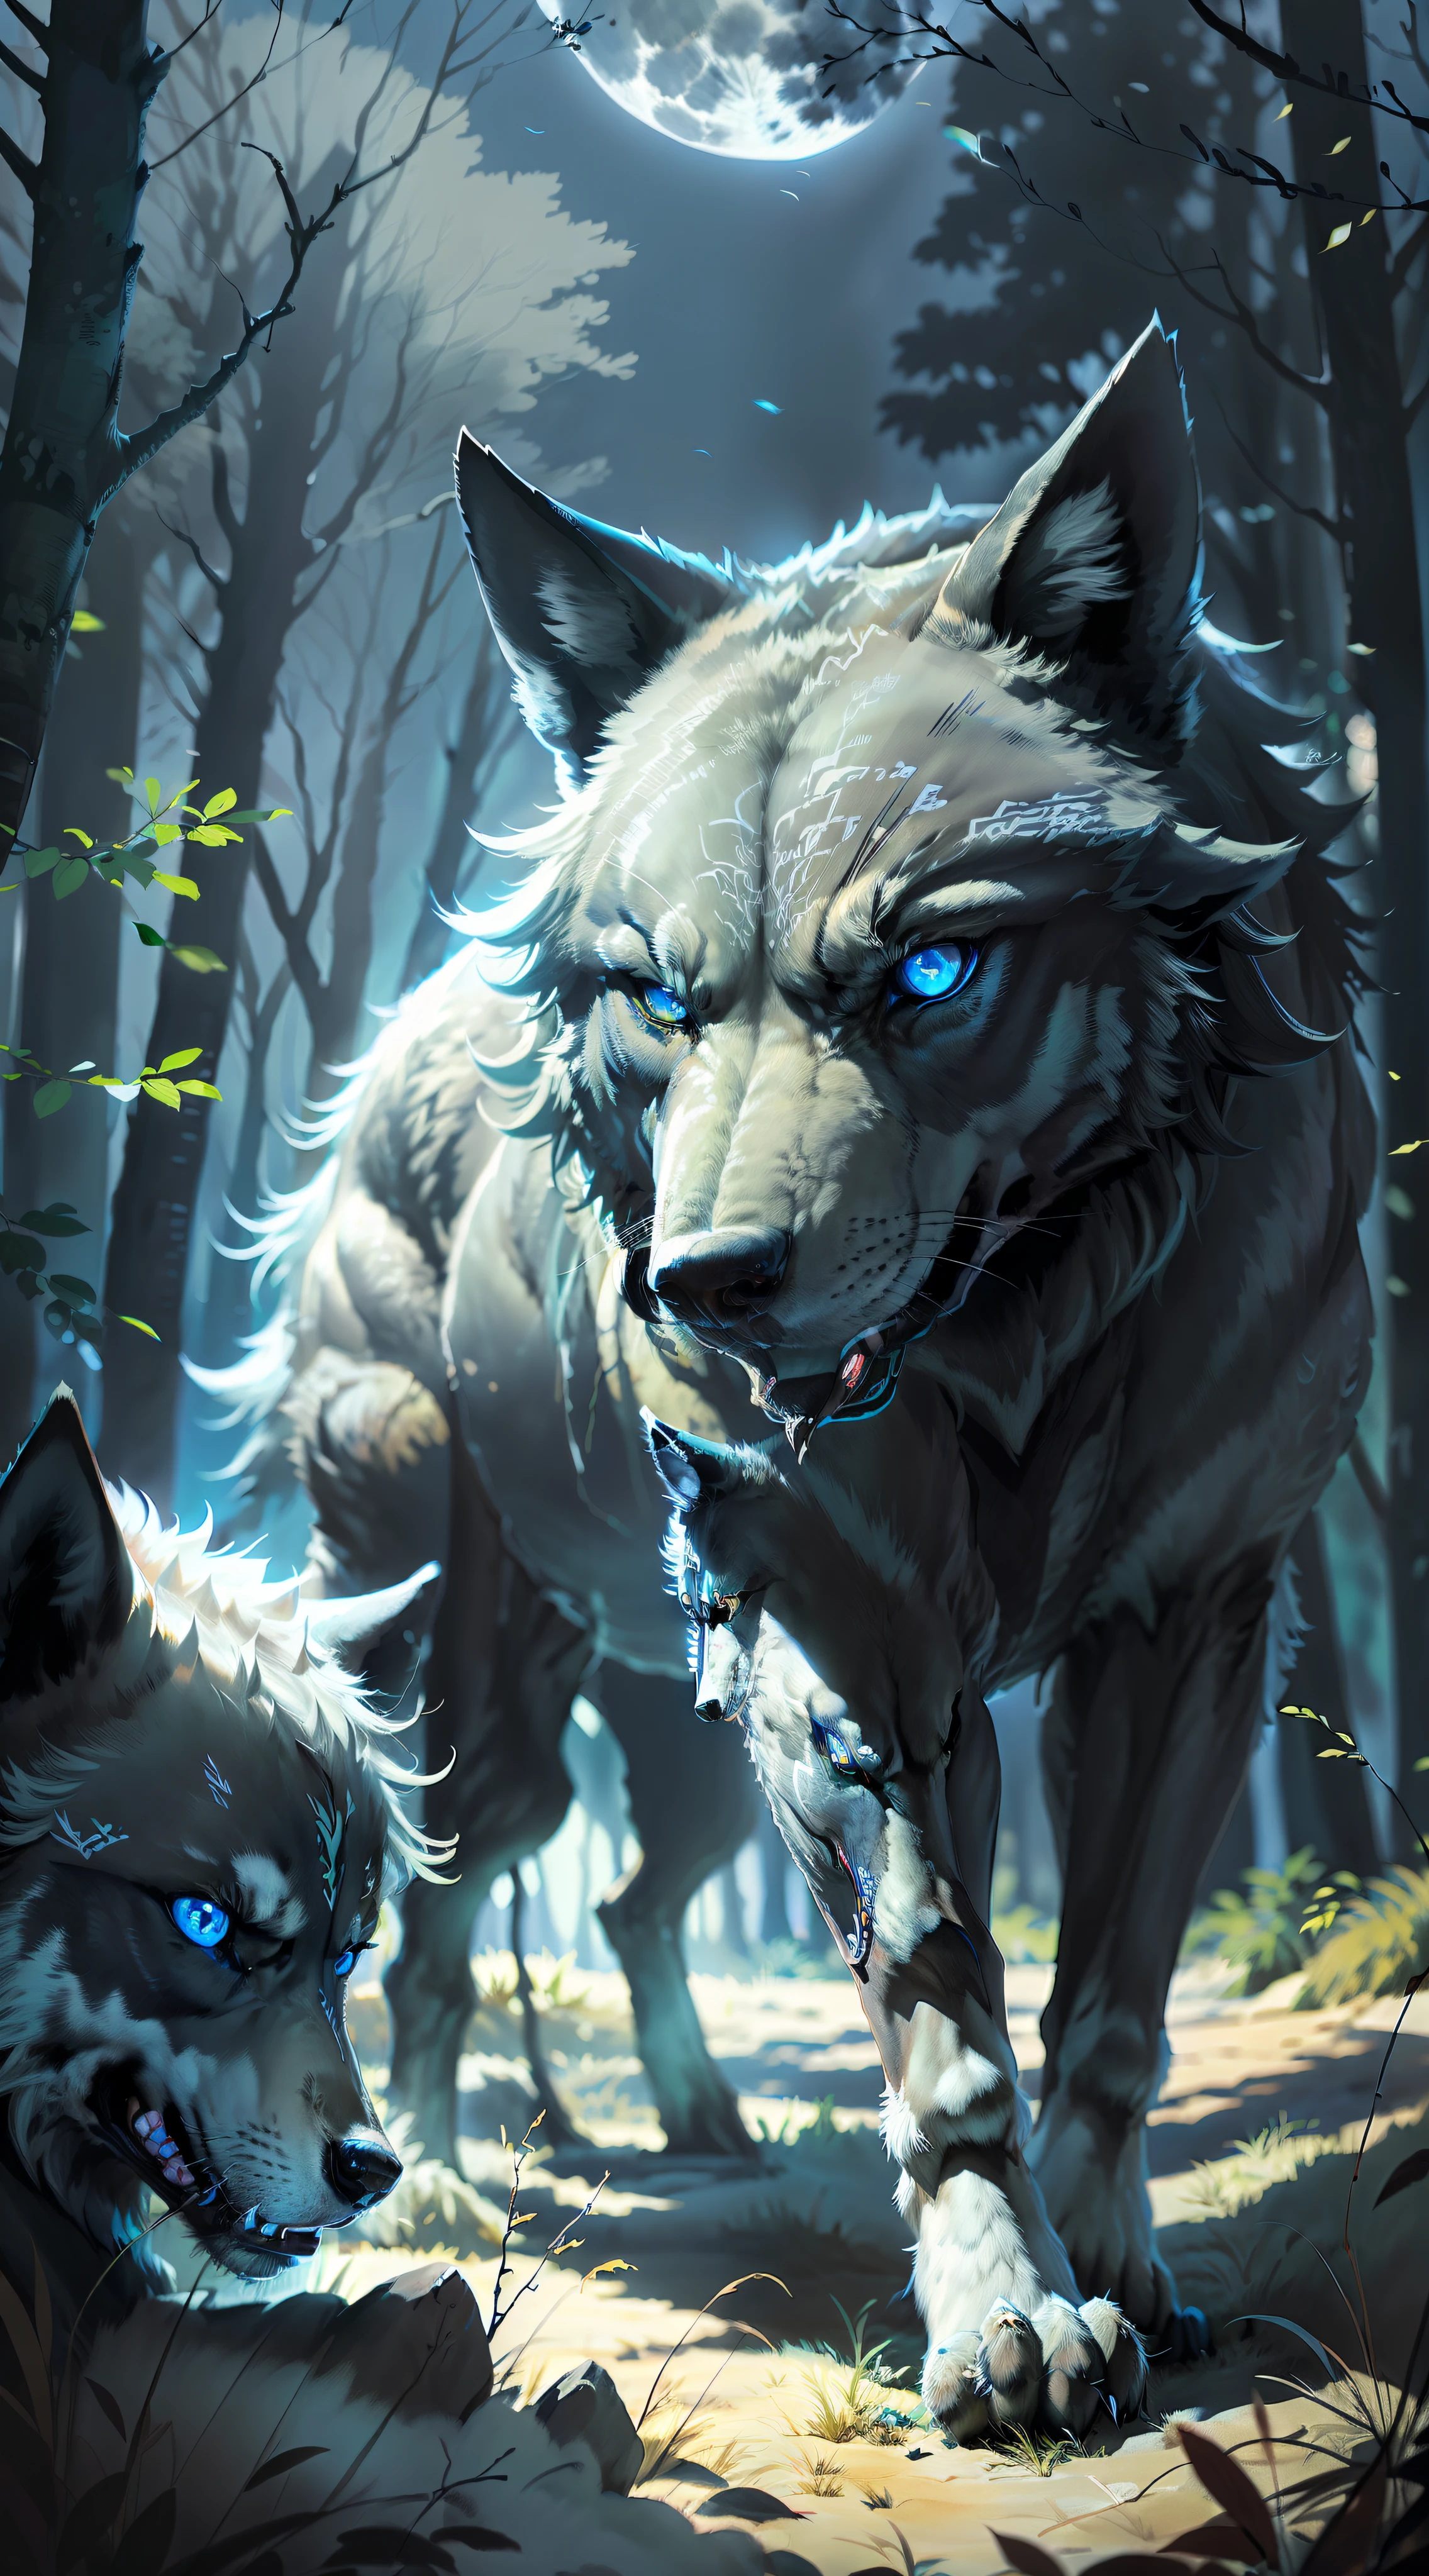 (ภาพเปิดที่เหมือนจริง) ผู้พิทักษ์หมาป่าสุดยอดของแพ็ค, "สีดำed wolf bright blue eyes." ฝูงหมาป่าสุนัข, ( พระจันทร์เต็มดวง, ป่ากลางคืน) "สีดำ"